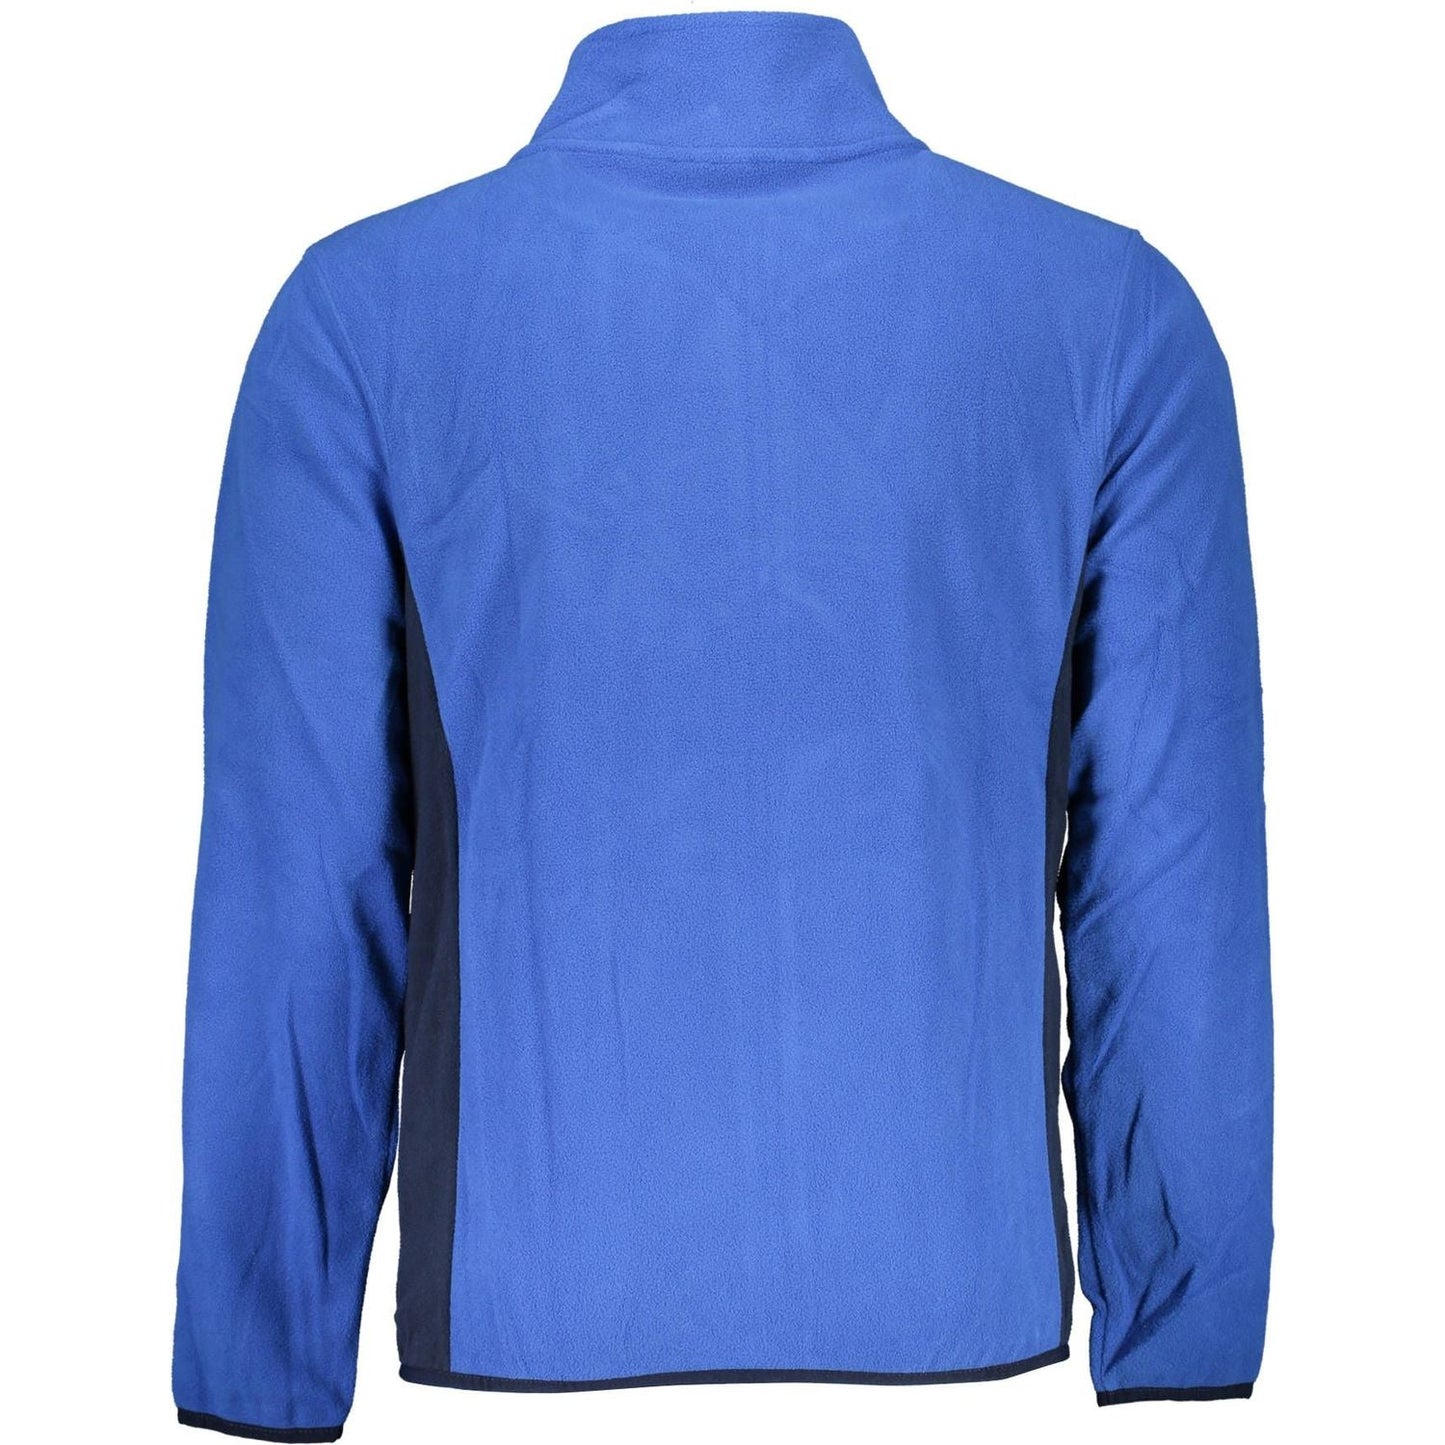 Norway 1963 Elegant Long-Sleeved Blue Sweatshirt elegant-long-sleeved-blue-sweatshirt